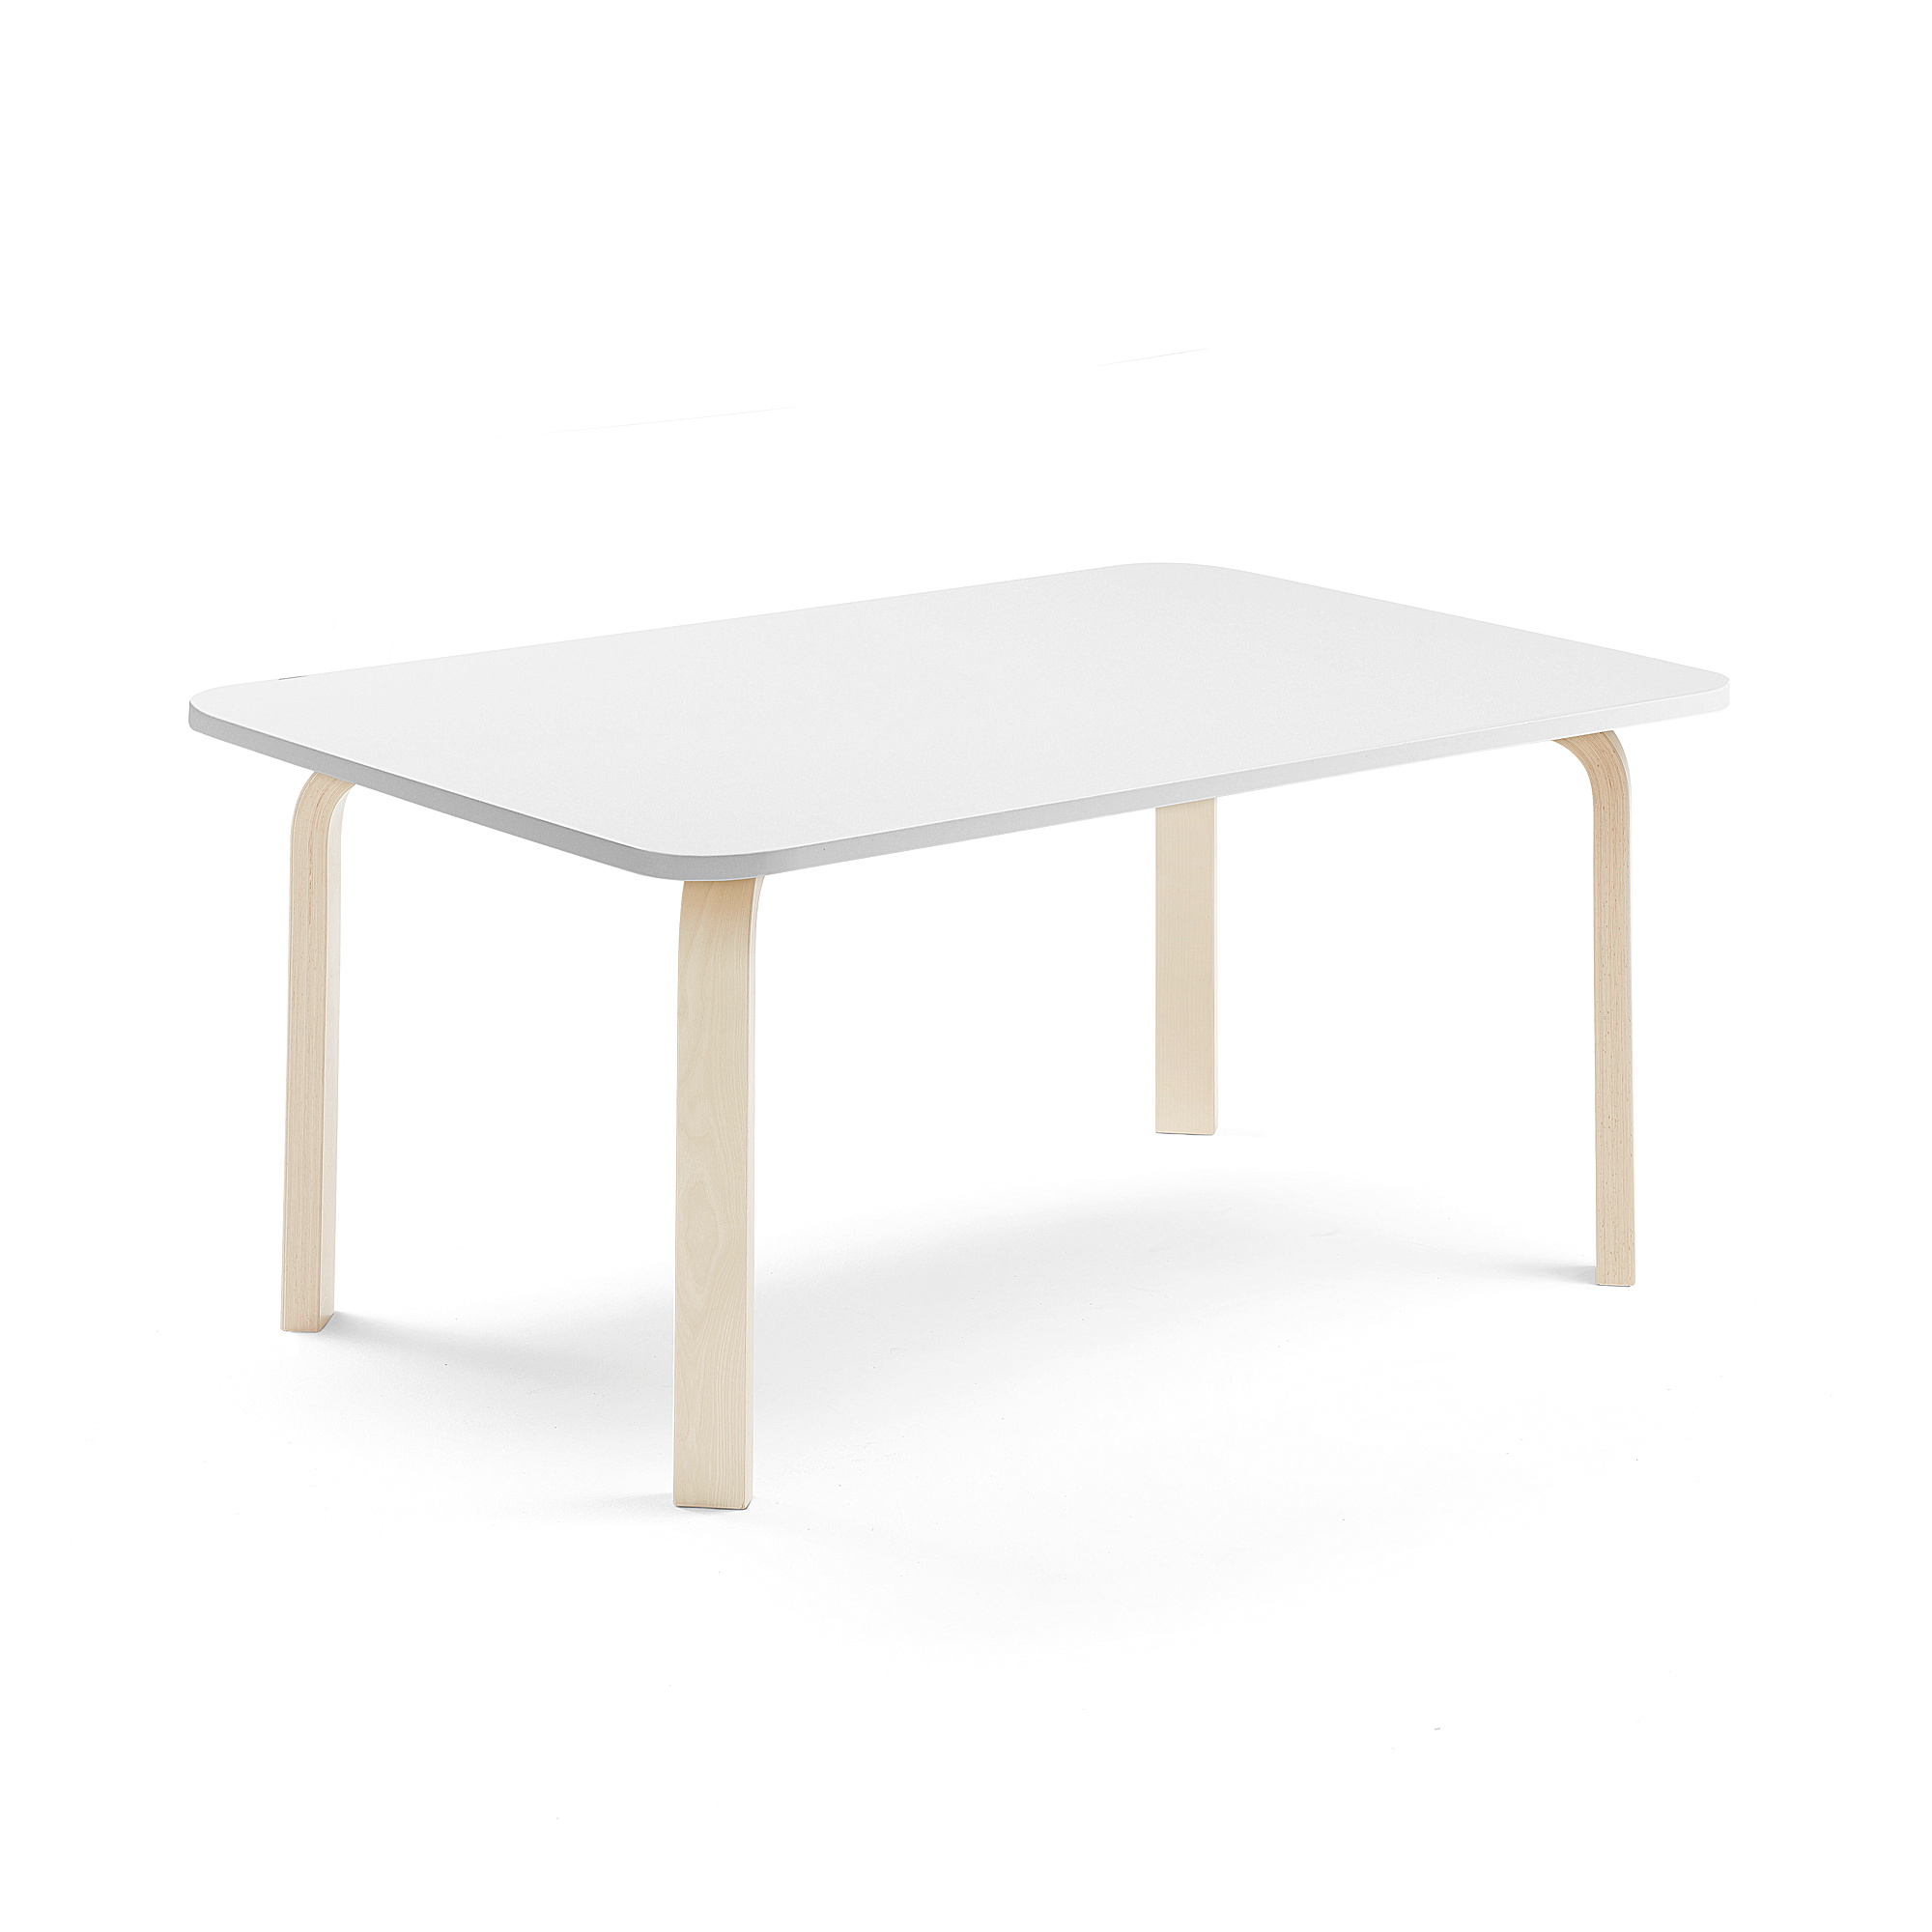 Stůl ELTON, 1200x700x530 mm, bříza, akustická HPL deska, bílá